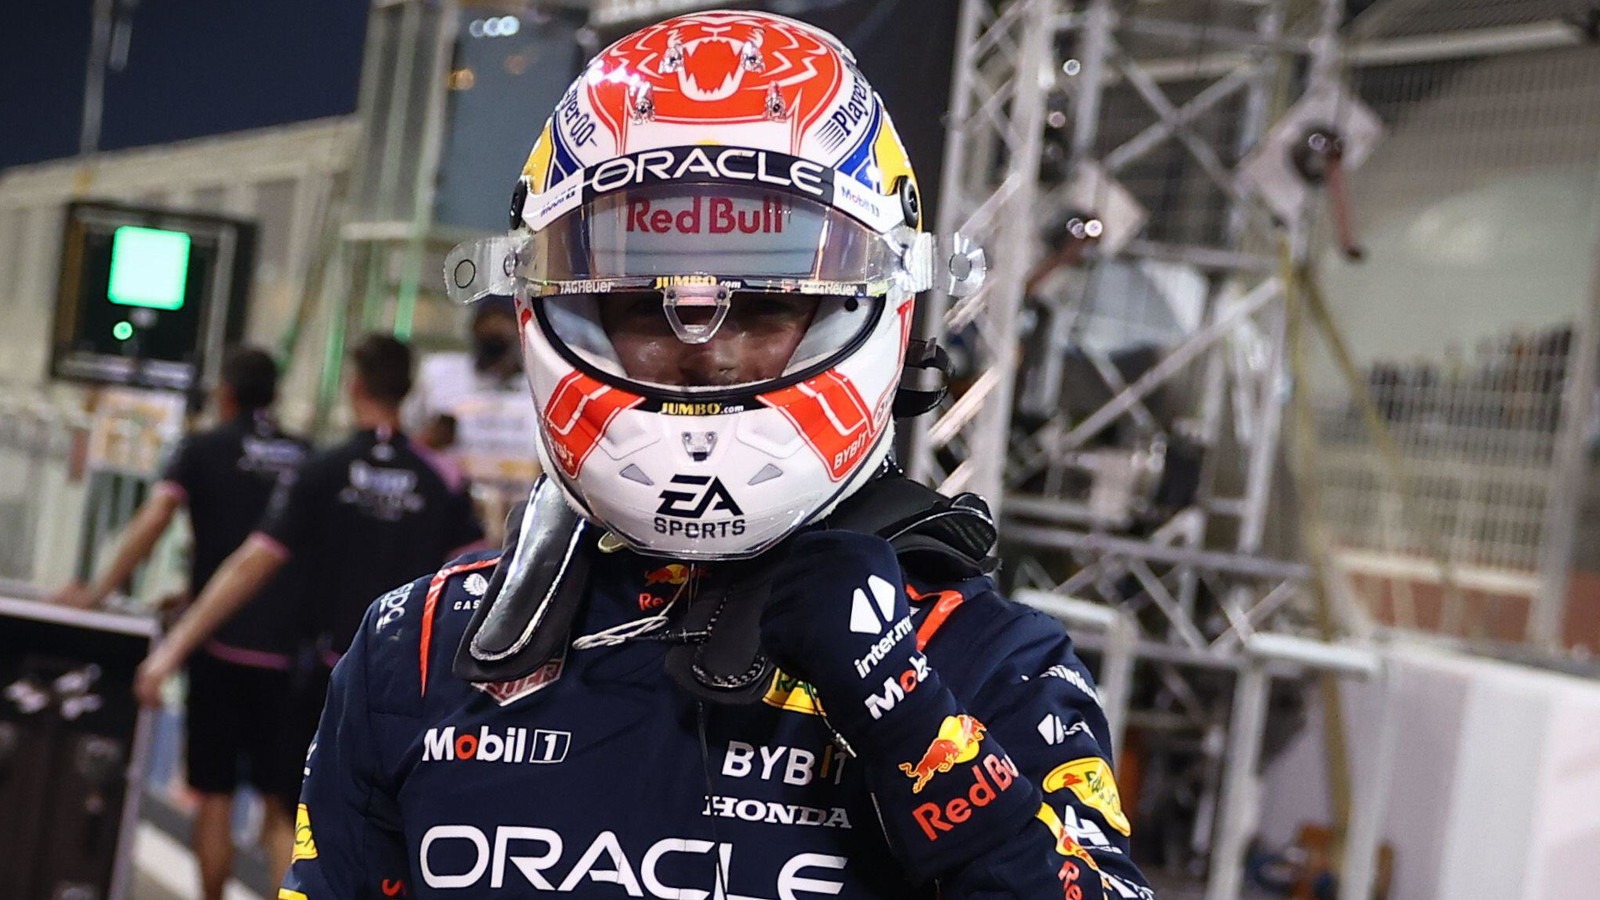 Max Verstappen inicia con pie derecho la defensa de su título conseguido el año pasado, luego de finalizar como campeón del primer Gran Premio de la temporada en Bahréin.